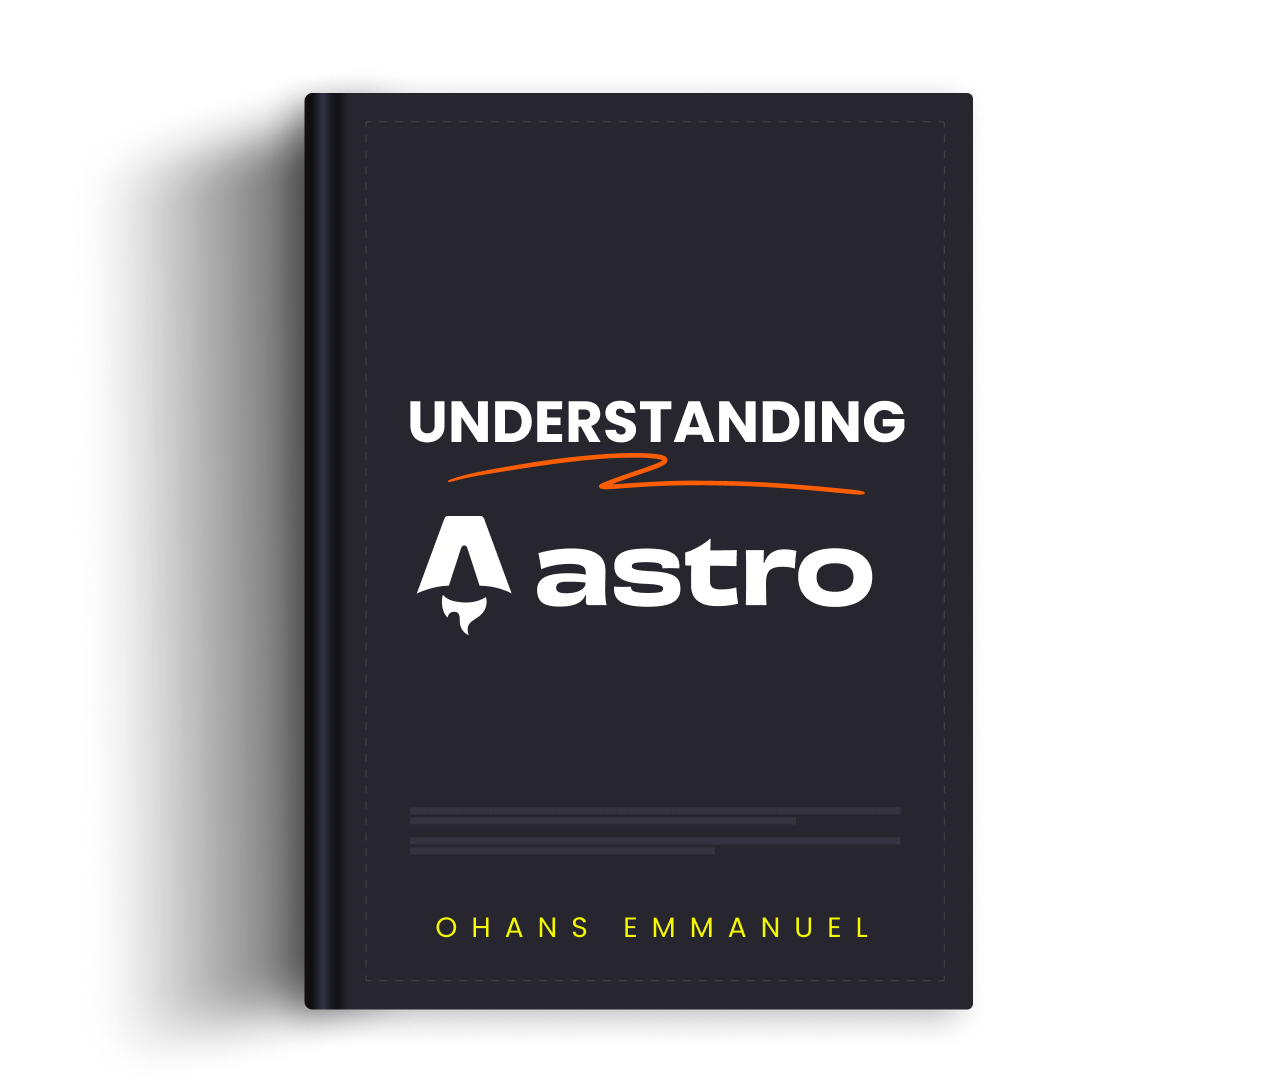 Understanding Astro book cover